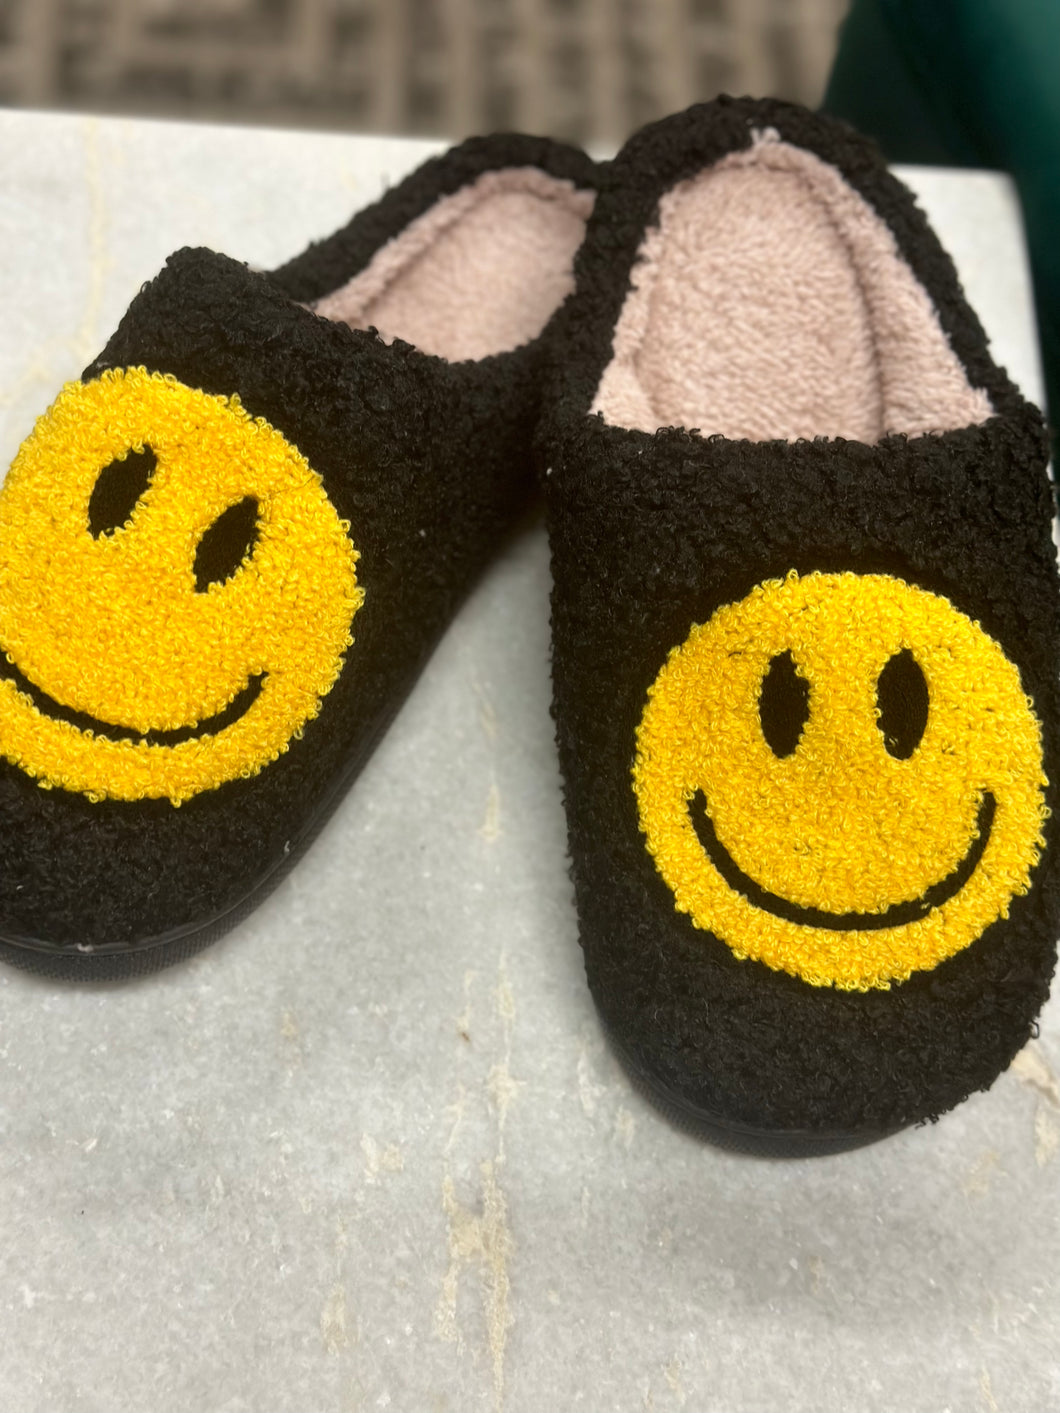 Black Smile Slippers